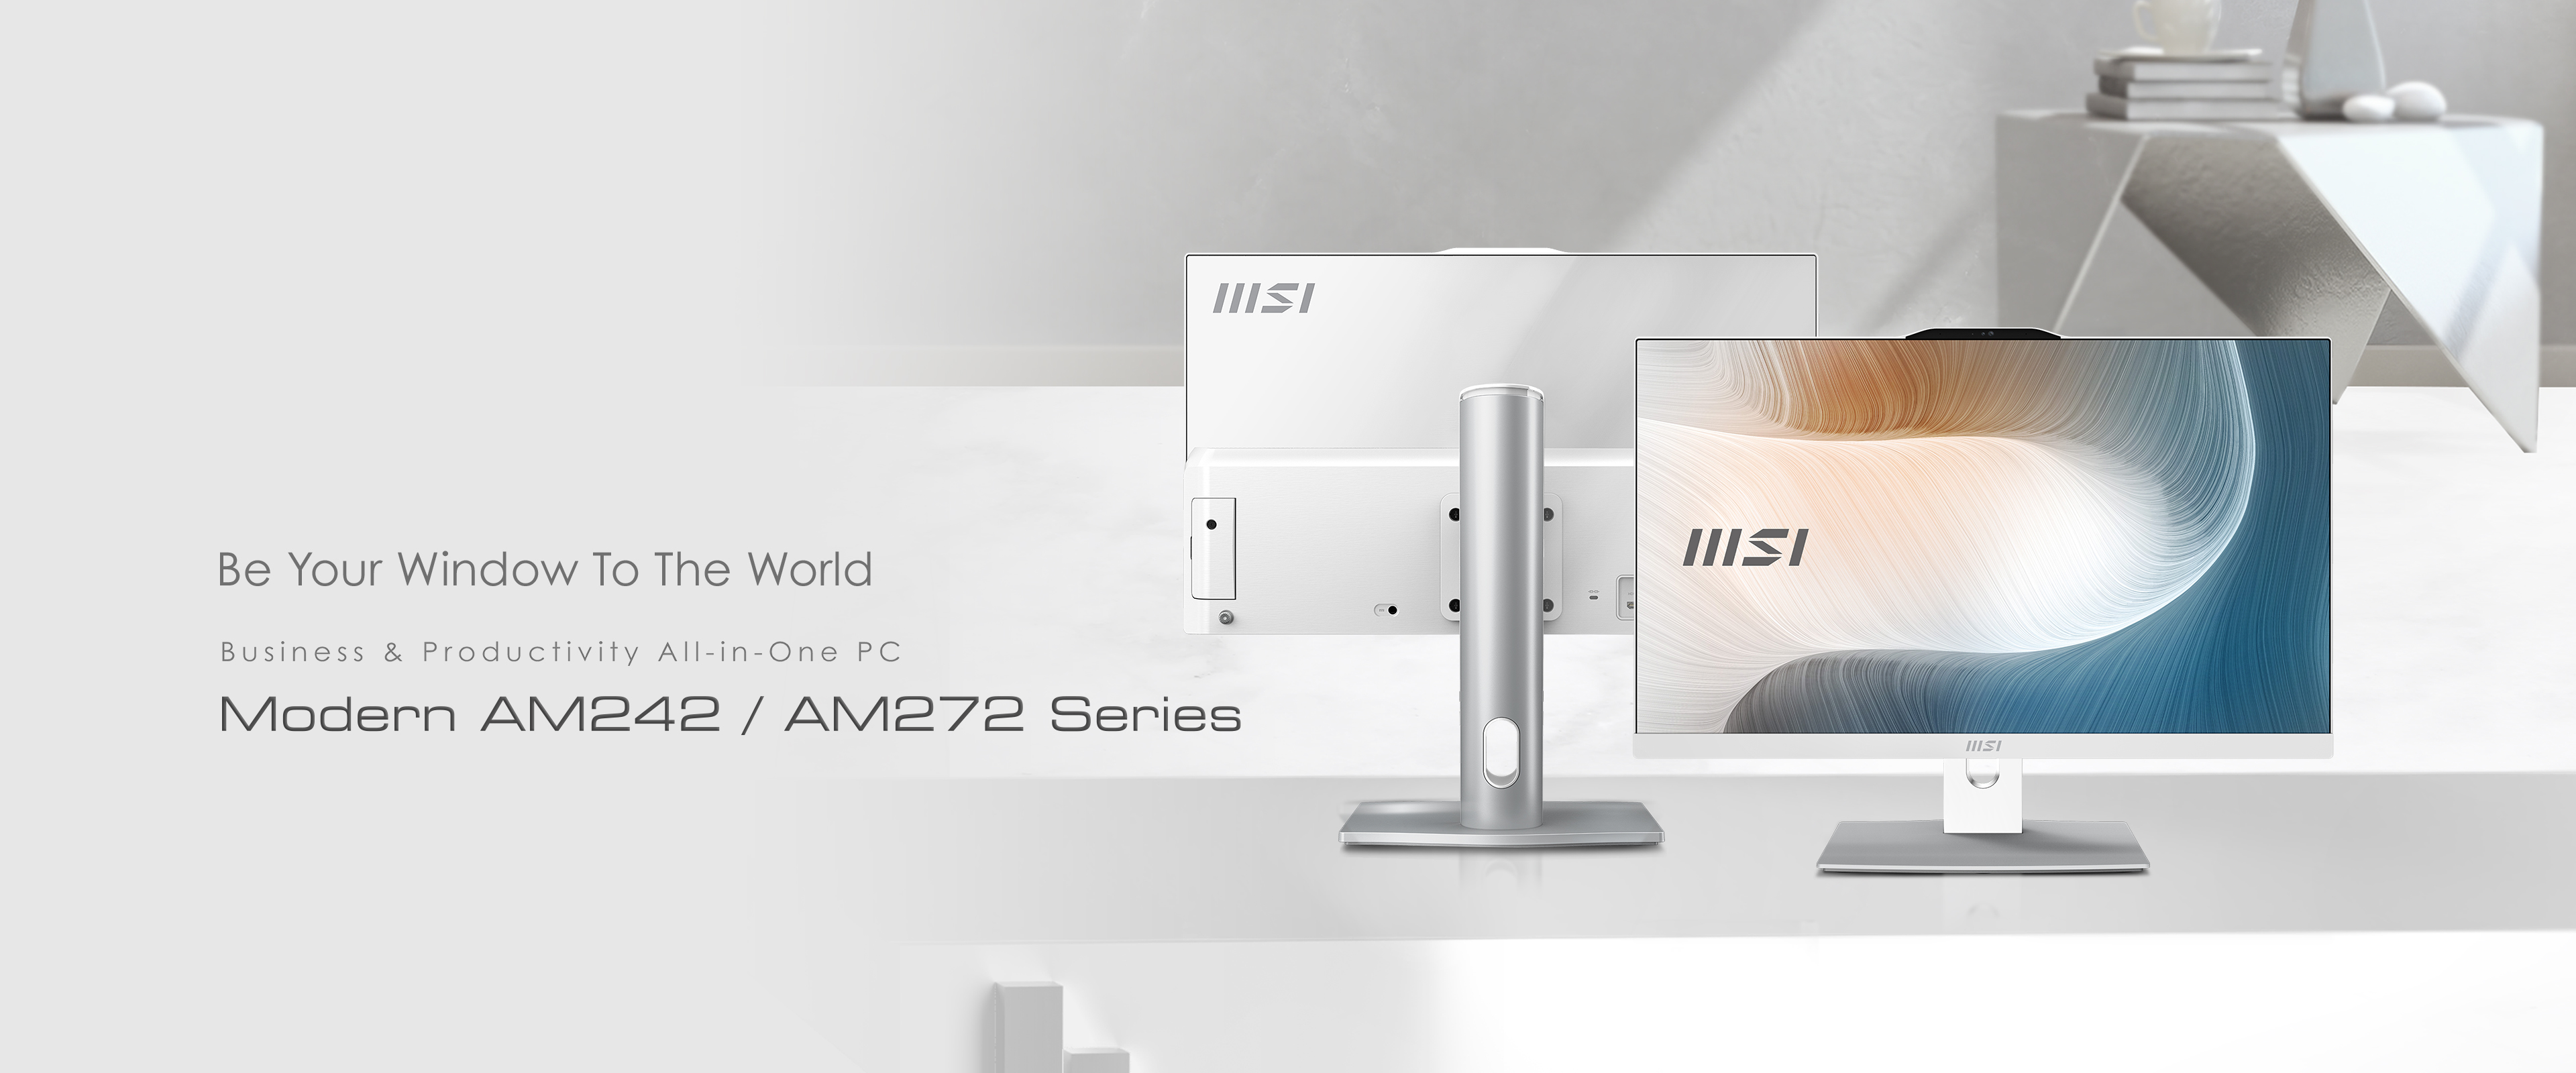 MSI ra mắt PC AIO Modern AM242 & AM272 Series cùng dòng màn hình Modern MD272 Series